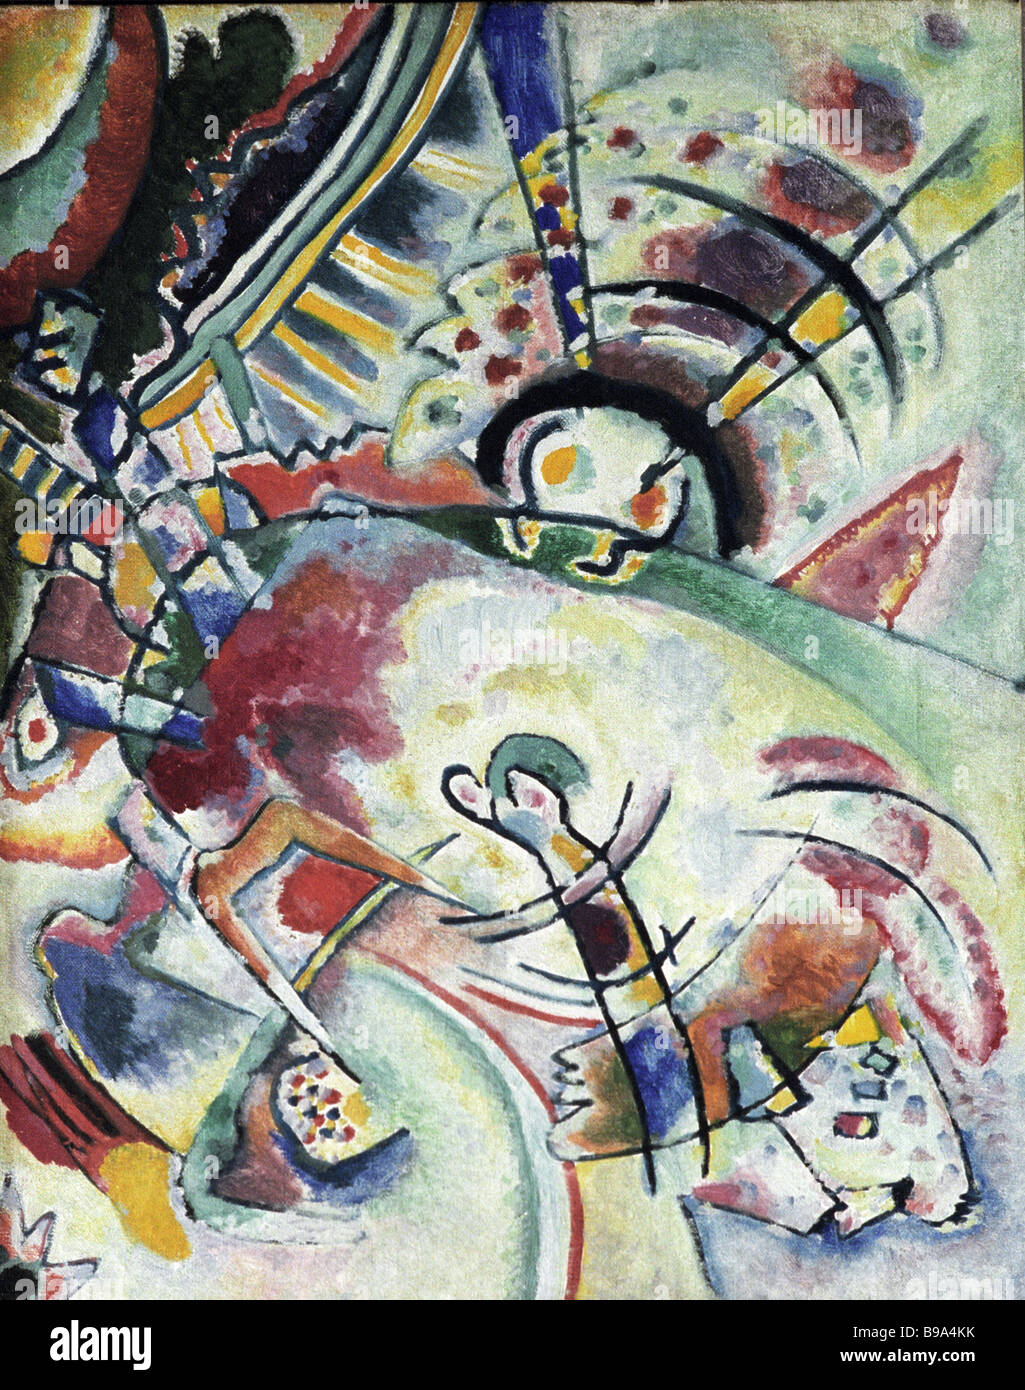 La riproduzione della pittura di Vassily Kandinsky in mostra alla fiera Arnold Schonberg Vassily Kandinsky dialogo tra Foto Stock